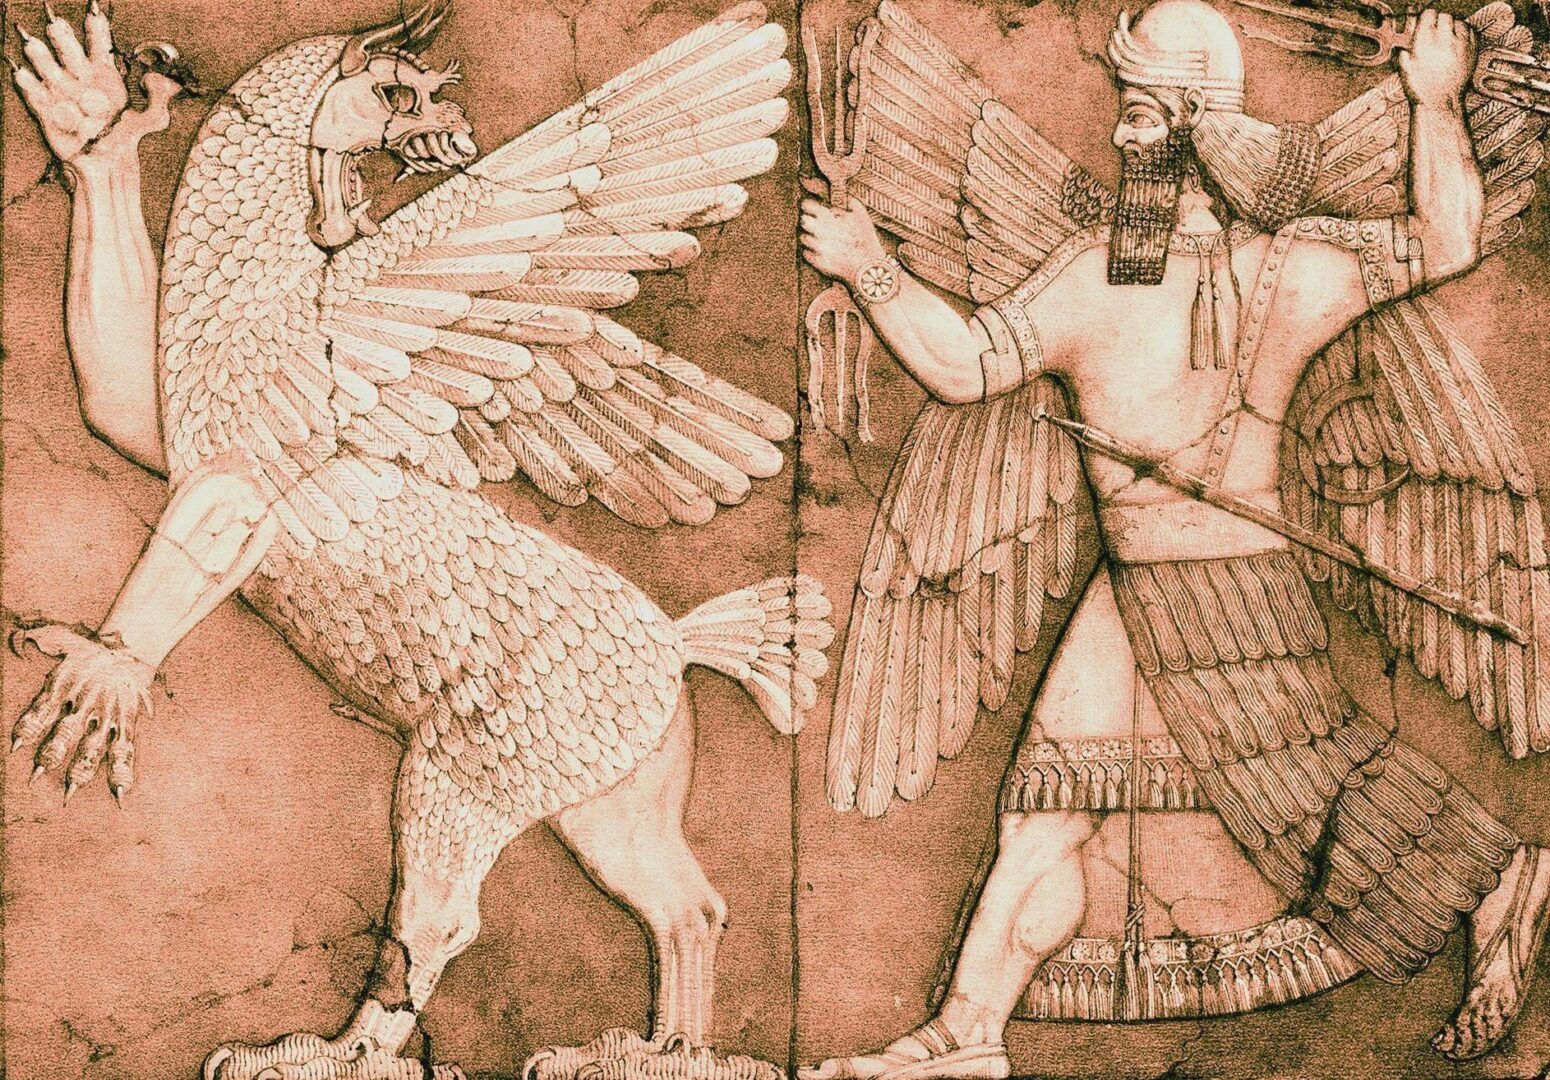 Apresentado na Bíblia, o personagem Marduc integra uma geração tardia de deuses da antiga Mesopotâmia